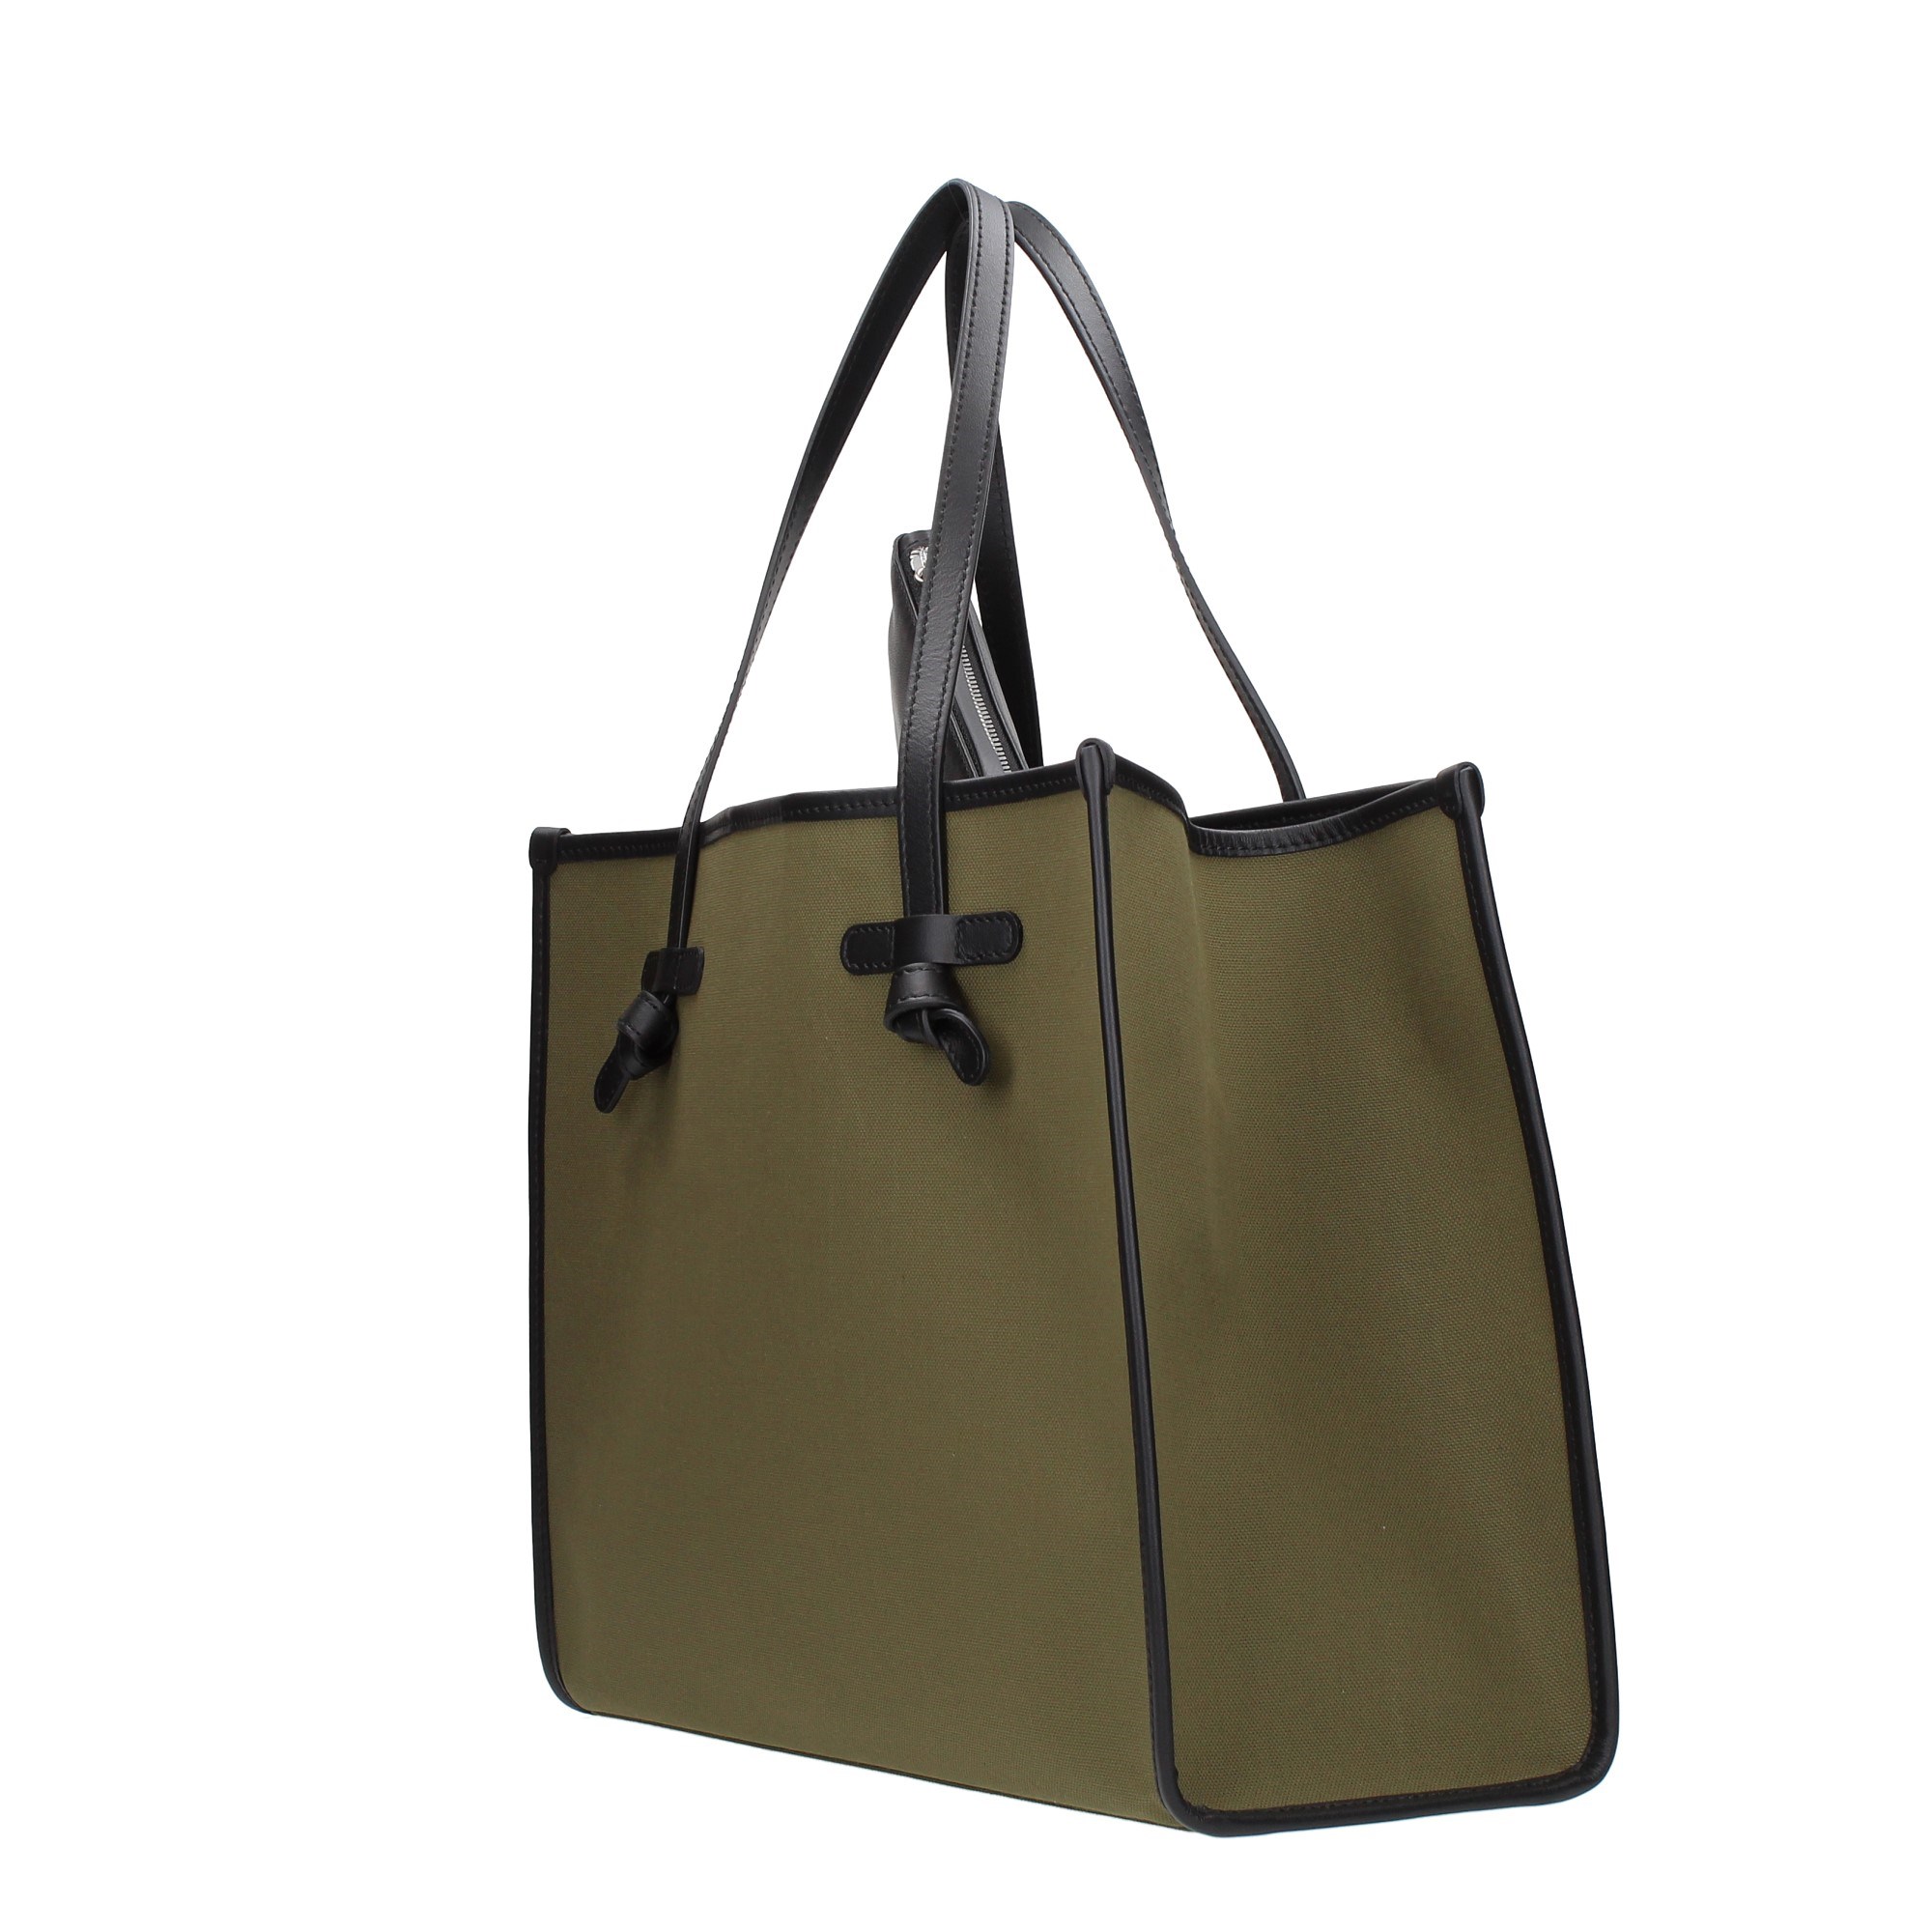 Marcella Club Gianni Chiarini Accessories Women Shoulder Bags Green BS6850/21PE CNV-SE